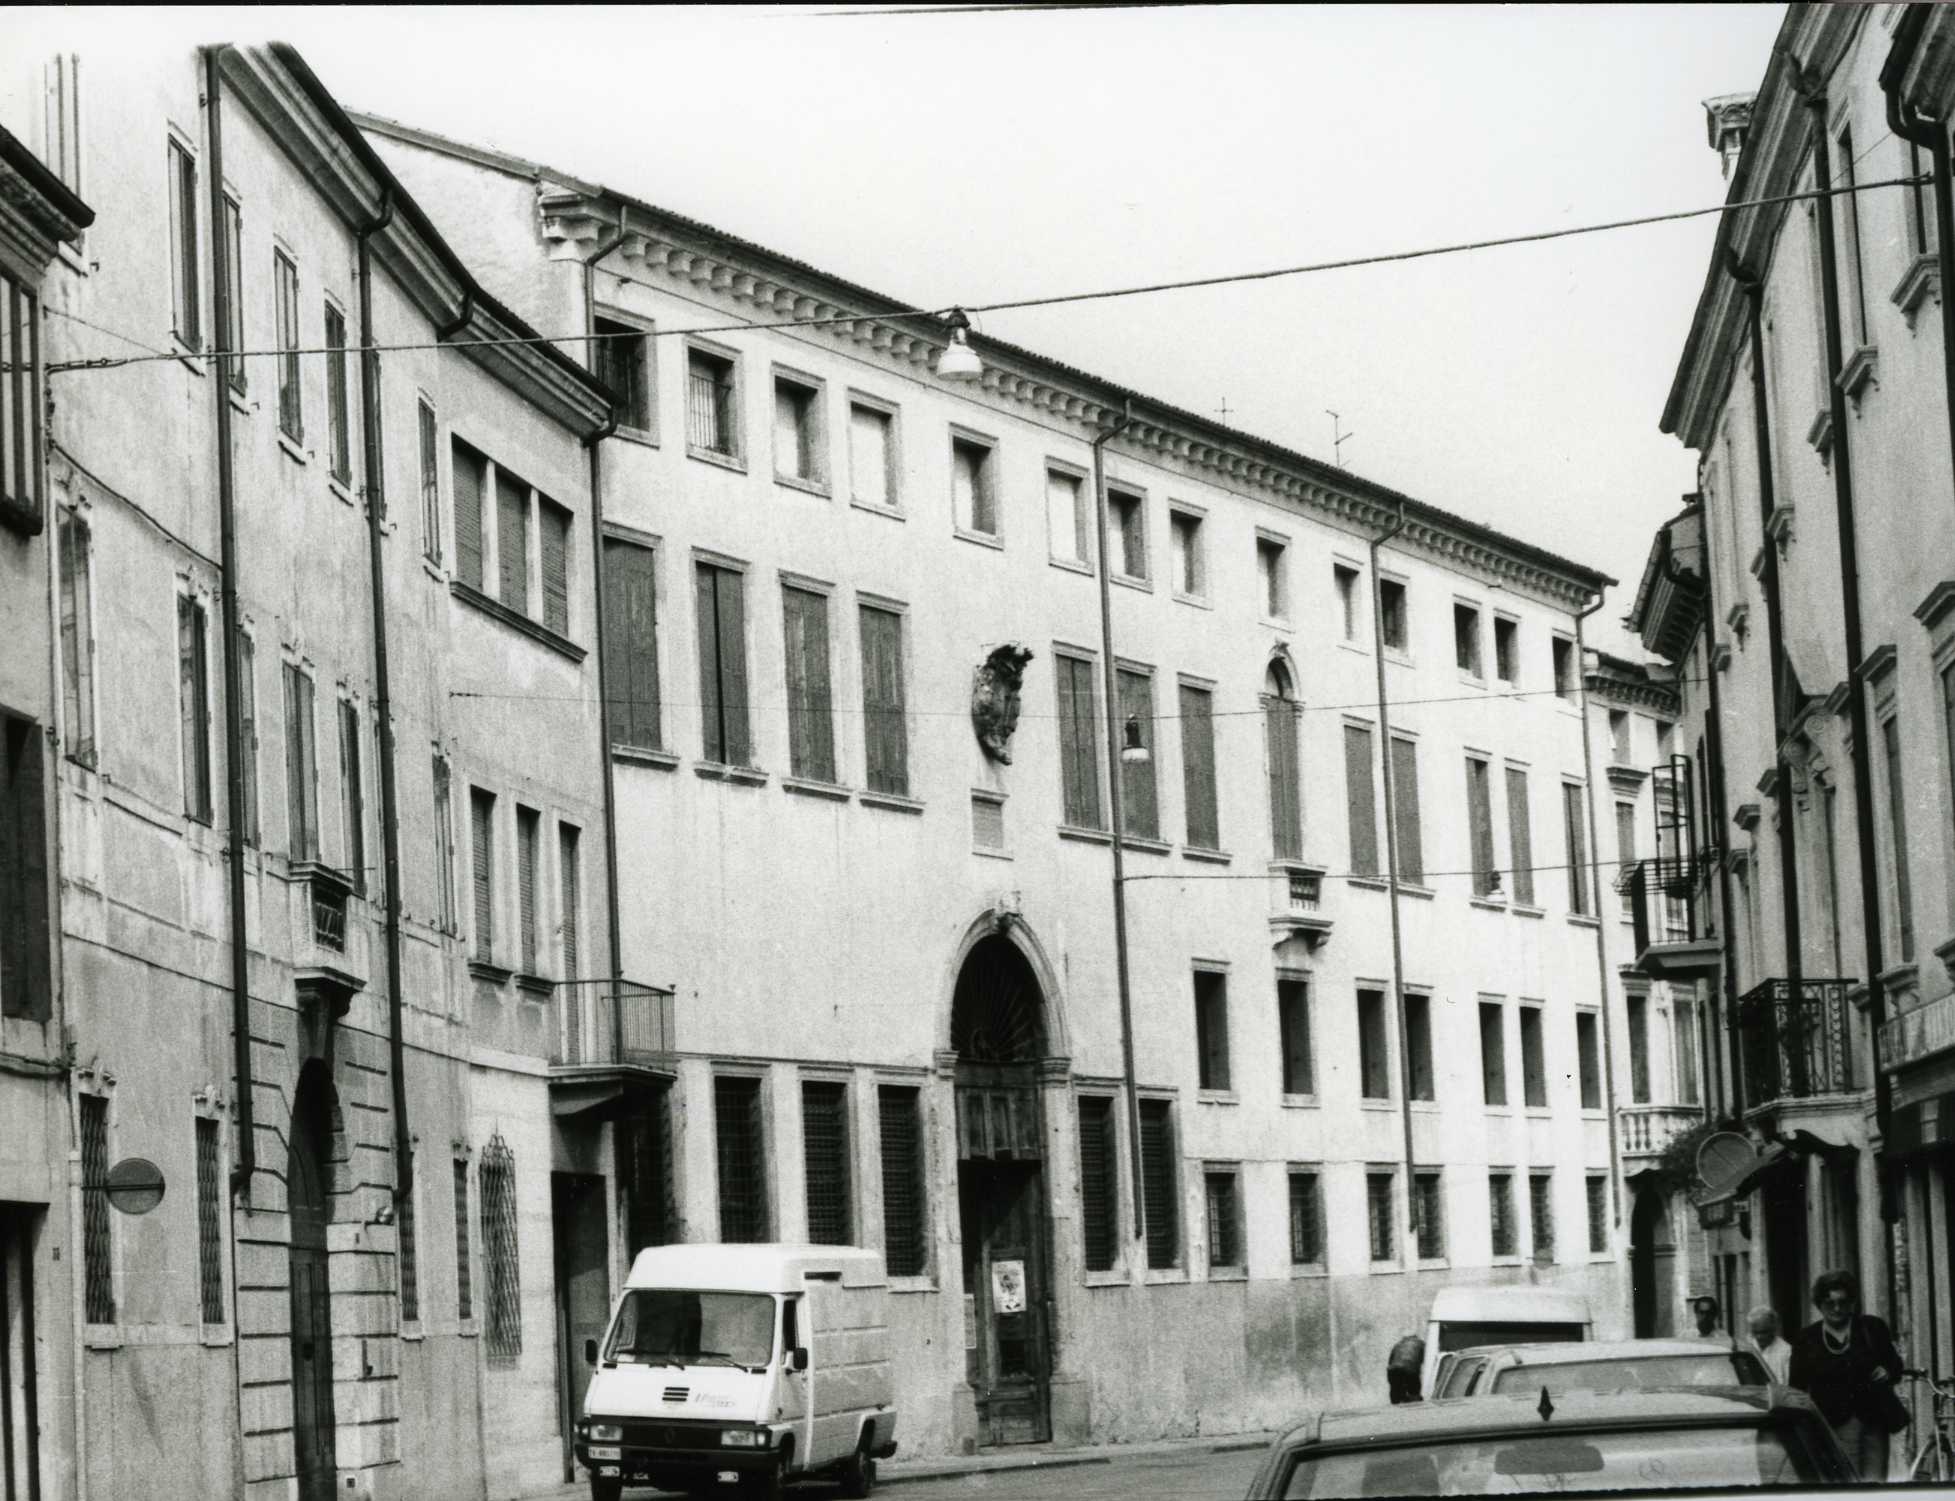 Palazzo Giustiniani (palazzo, nobiliare) - Vicenza (VI)  (XVII, seconda metà)